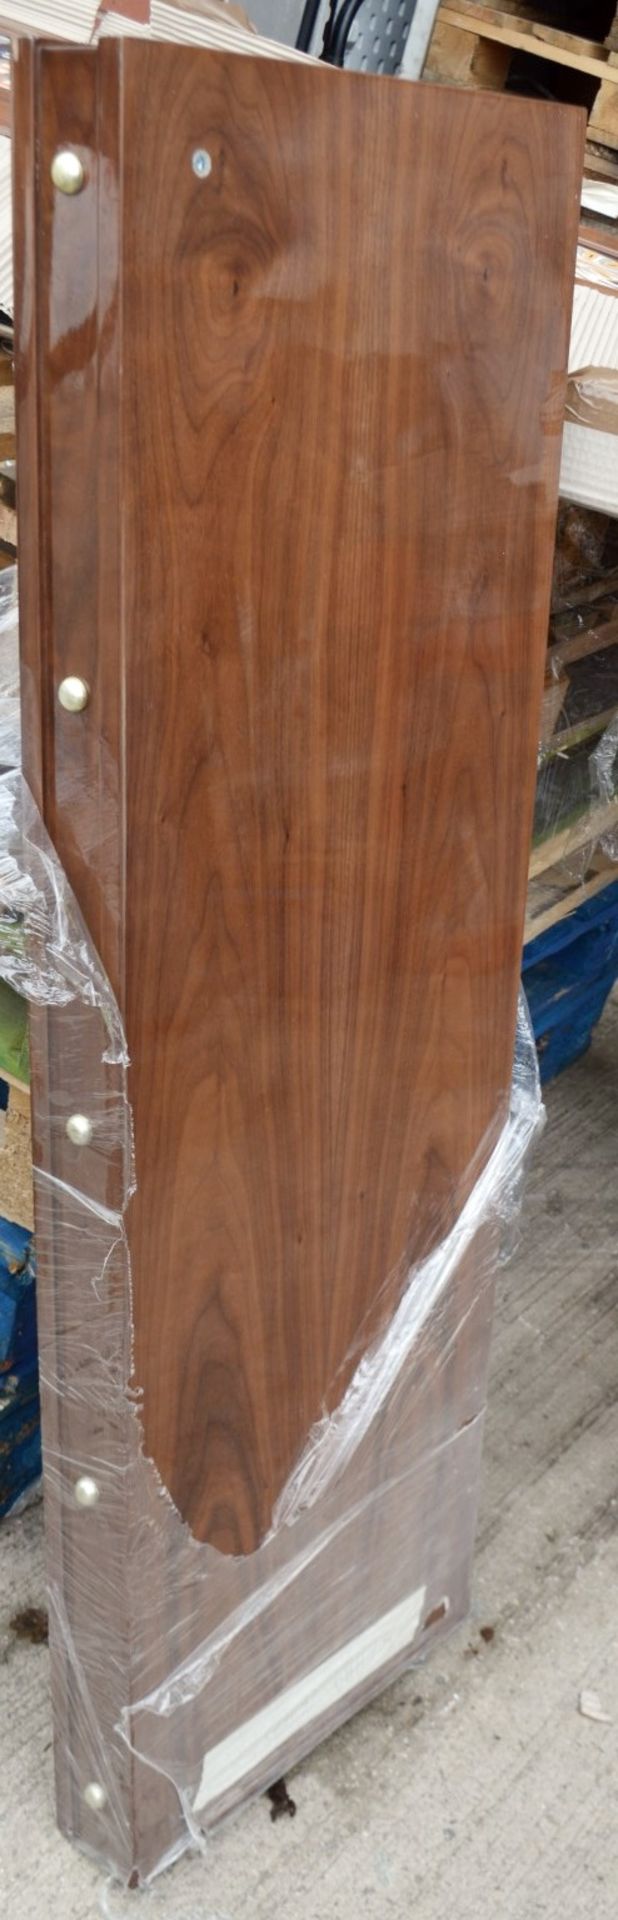 1 x JUSTIN VAN BREDA 'Grace' 2.5 Metre 4-Door Dresser With Inlaid Artwork - Original Price £6,359 - Image 2 of 19